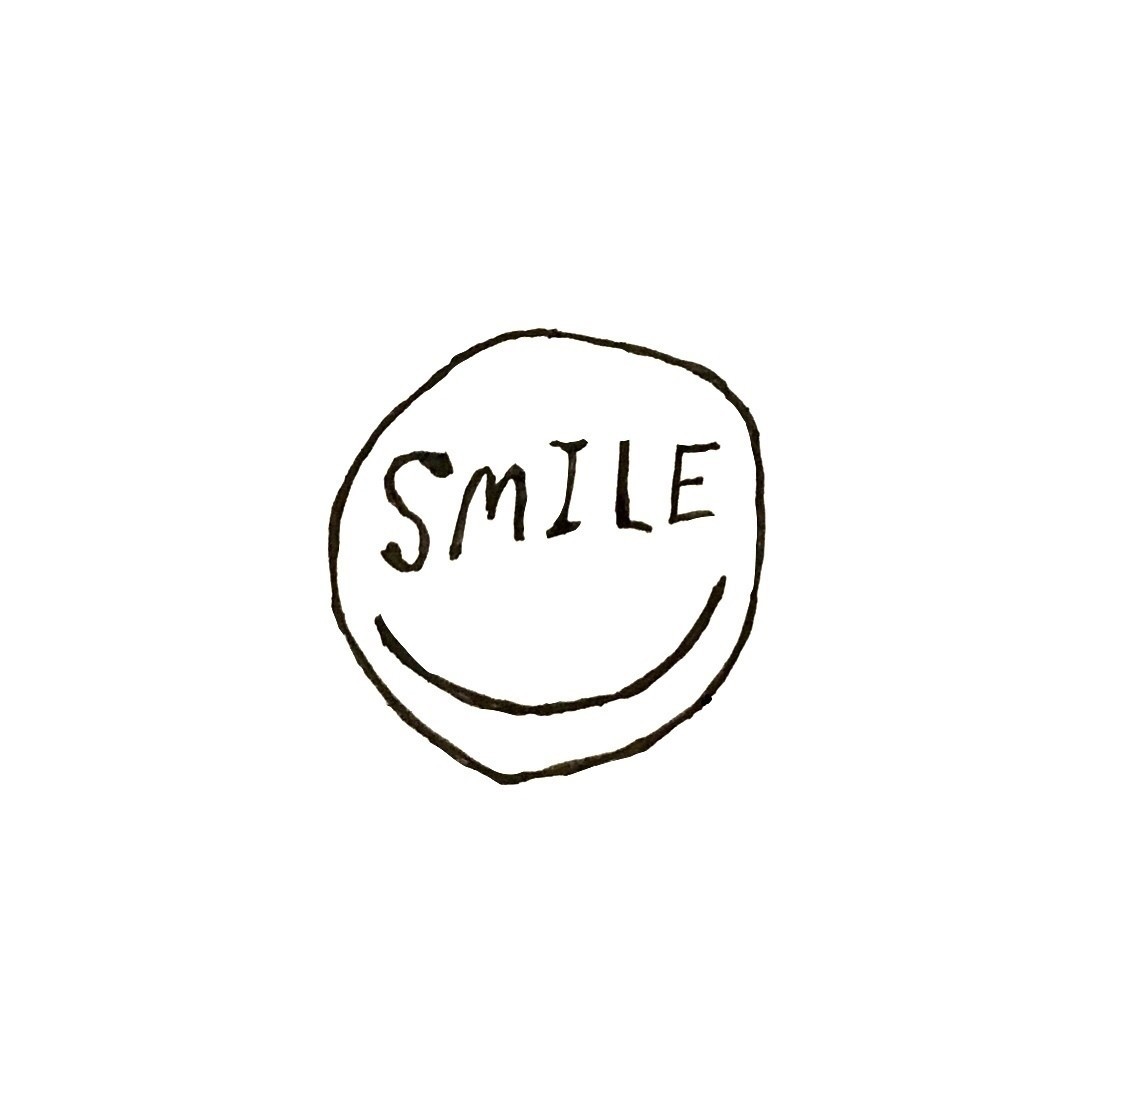 無料/商用可ｲﾗｽﾄ: Smile スマイルの文字のイラスト素材